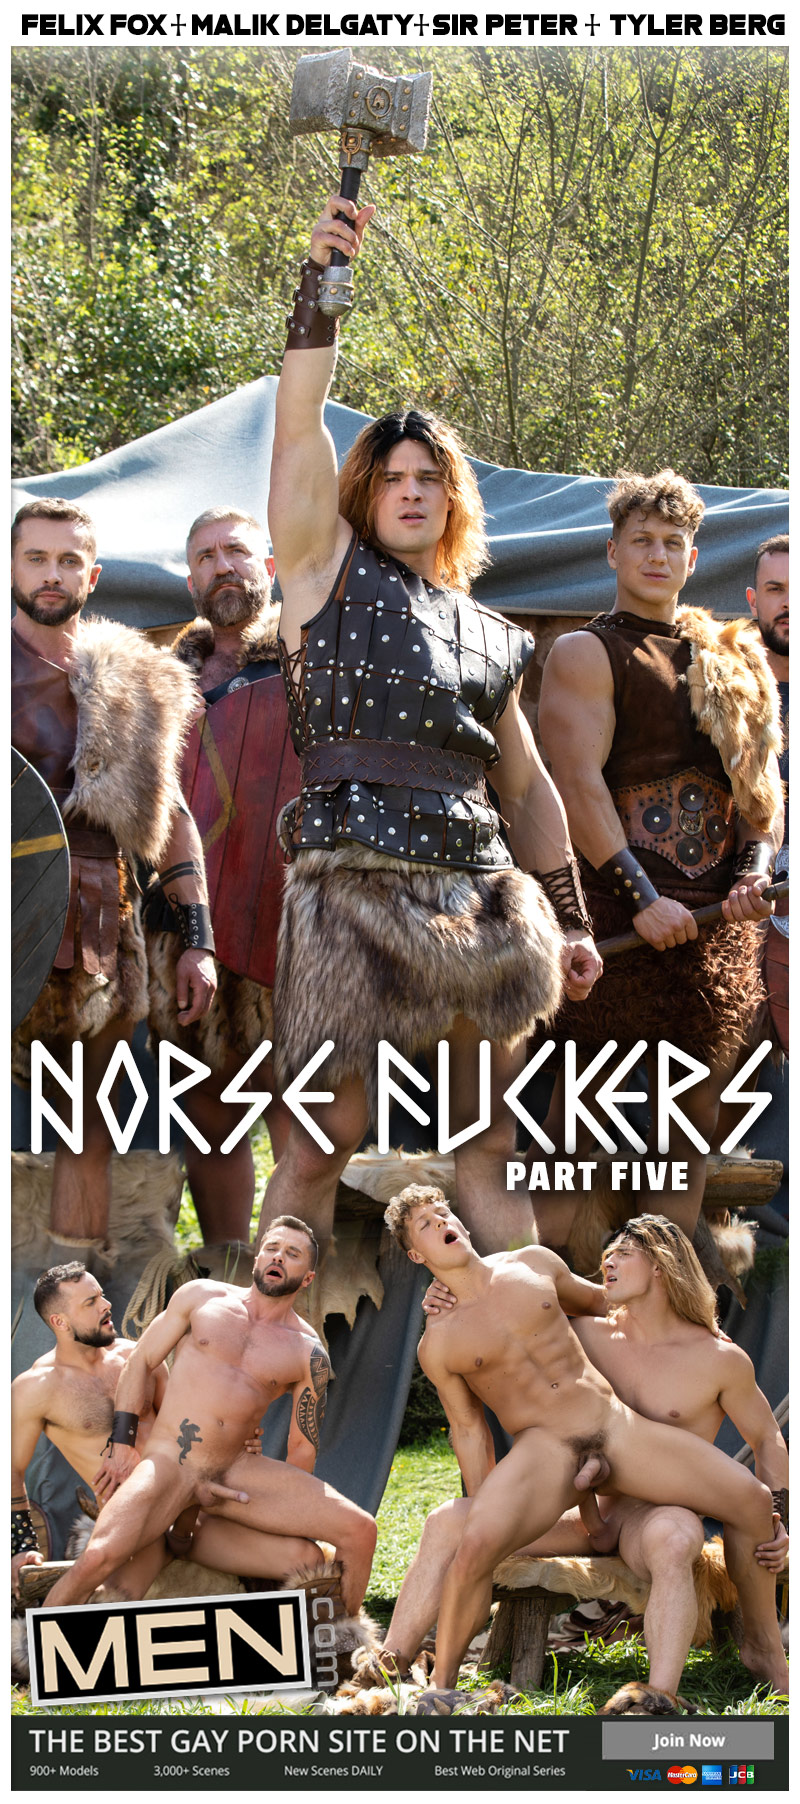 Norse Fuckers, Part 5 (Felix Fox, Malik Delgaty, Sir Peter and Tyler Berg) at MEN.com